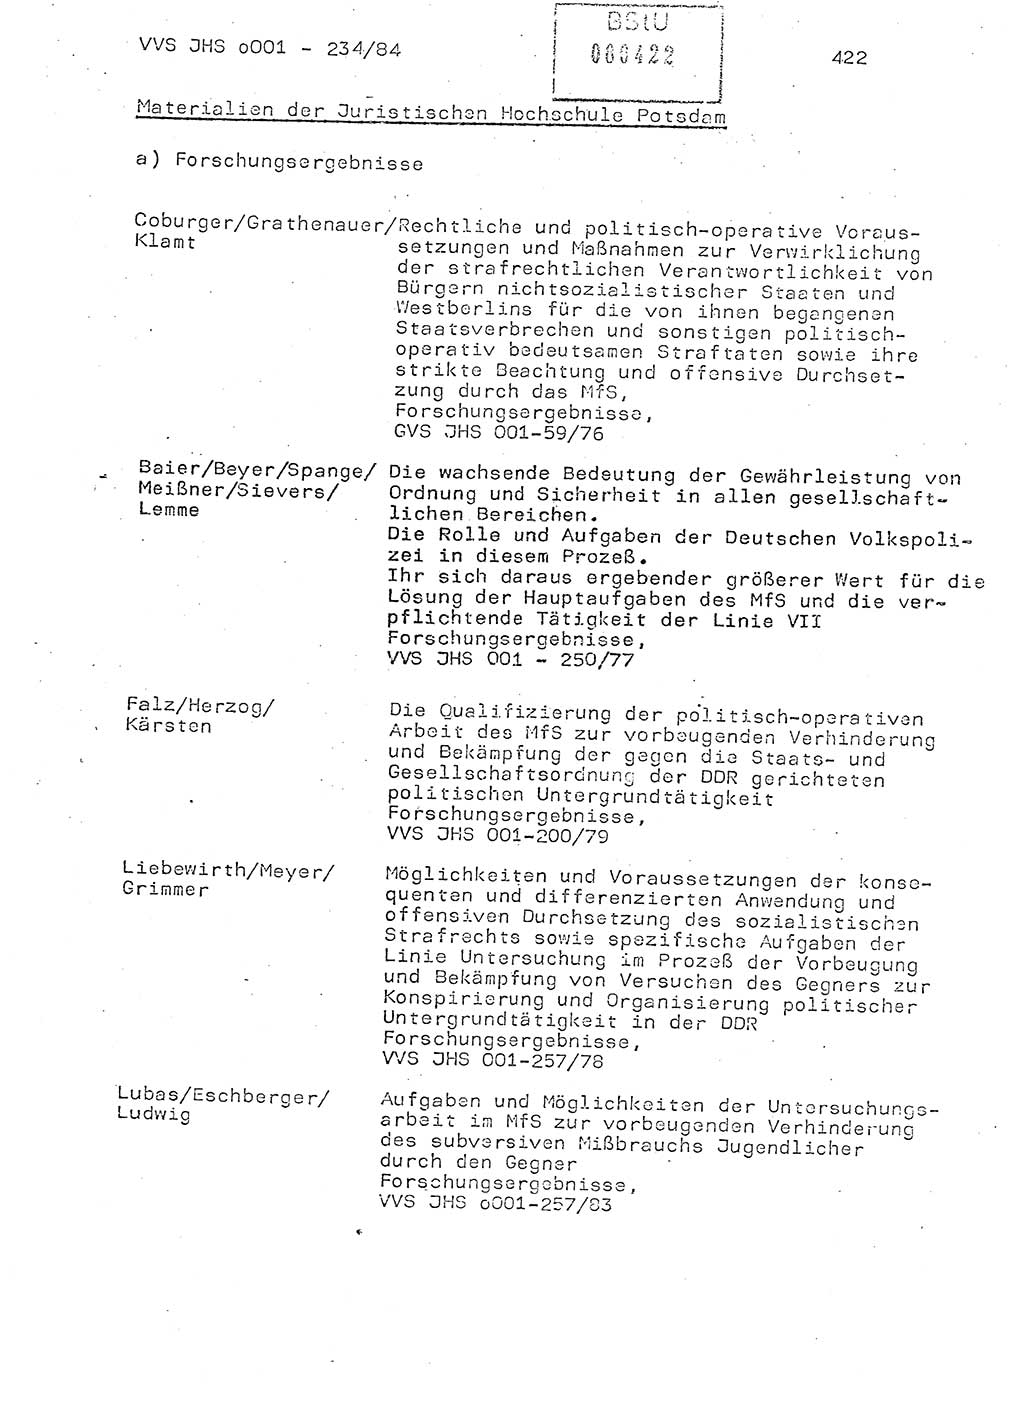 Dissertation Oberst Siegfried Rataizick (Abt. ⅩⅣ), Oberstleutnant Volkmar Heinz (Abt. ⅩⅣ), Oberstleutnant Werner Stein (HA Ⅸ), Hauptmann Heinz Conrad (JHS), Ministerium für Staatssicherheit (MfS) [Deutsche Demokratische Republik (DDR)], Juristische Hochschule (JHS), Vertrauliche Verschlußsache (VVS) o001-234/84, Potsdam 1984, Seite 422 (Diss. MfS DDR JHS VVS o001-234/84 1984, S. 422)